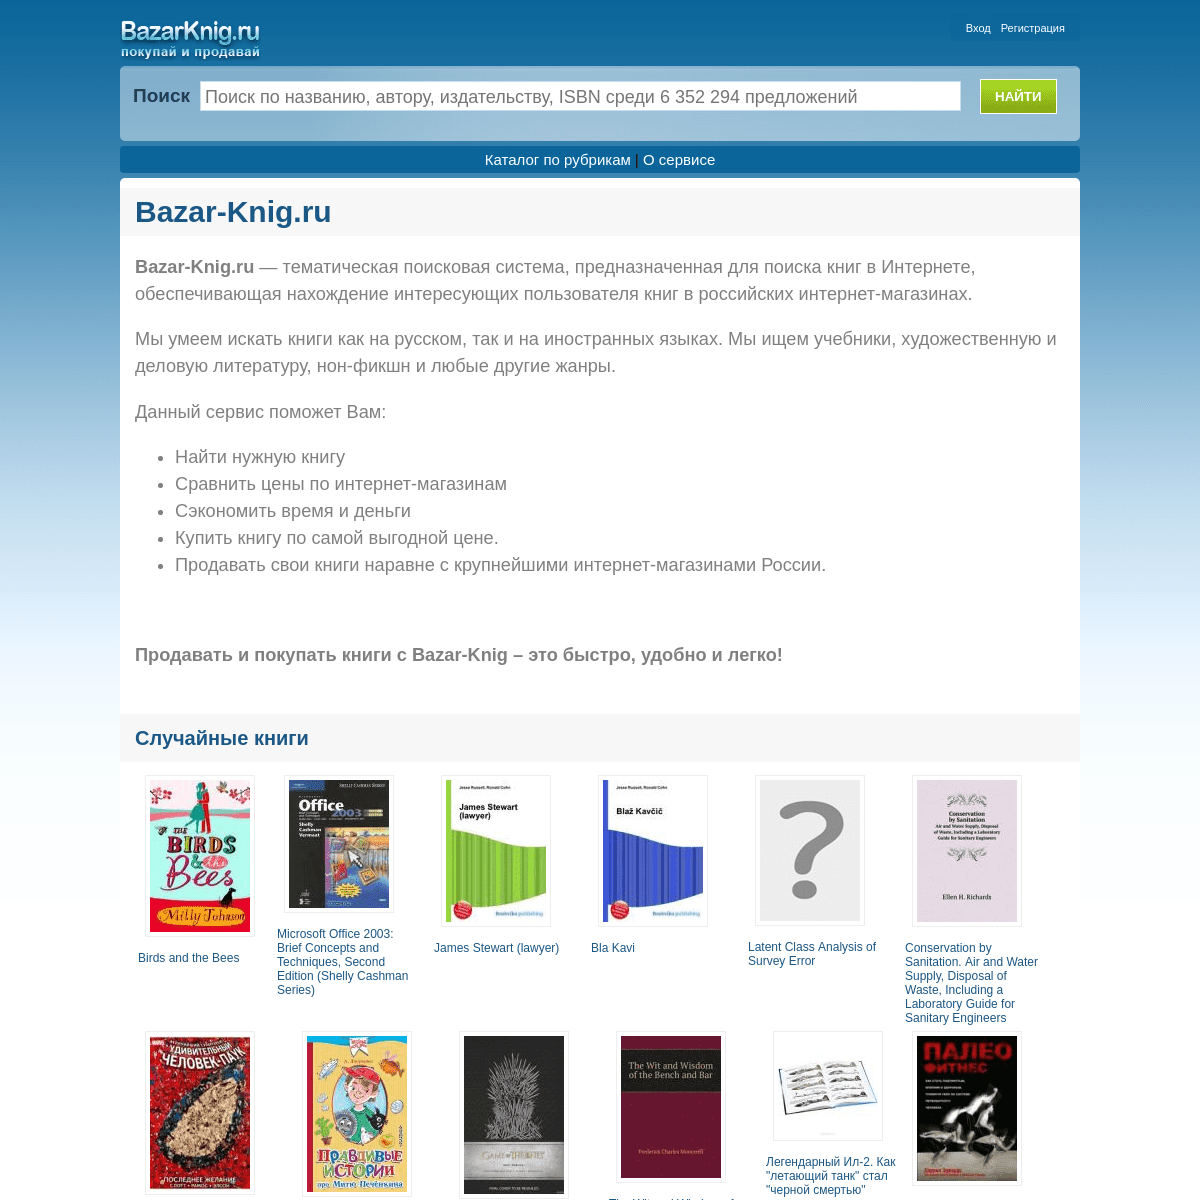 Поиск книг в интернет-магазинах по выгодным ценам. Сервис по продаже книг в интернете - Bazar-Knig.ru